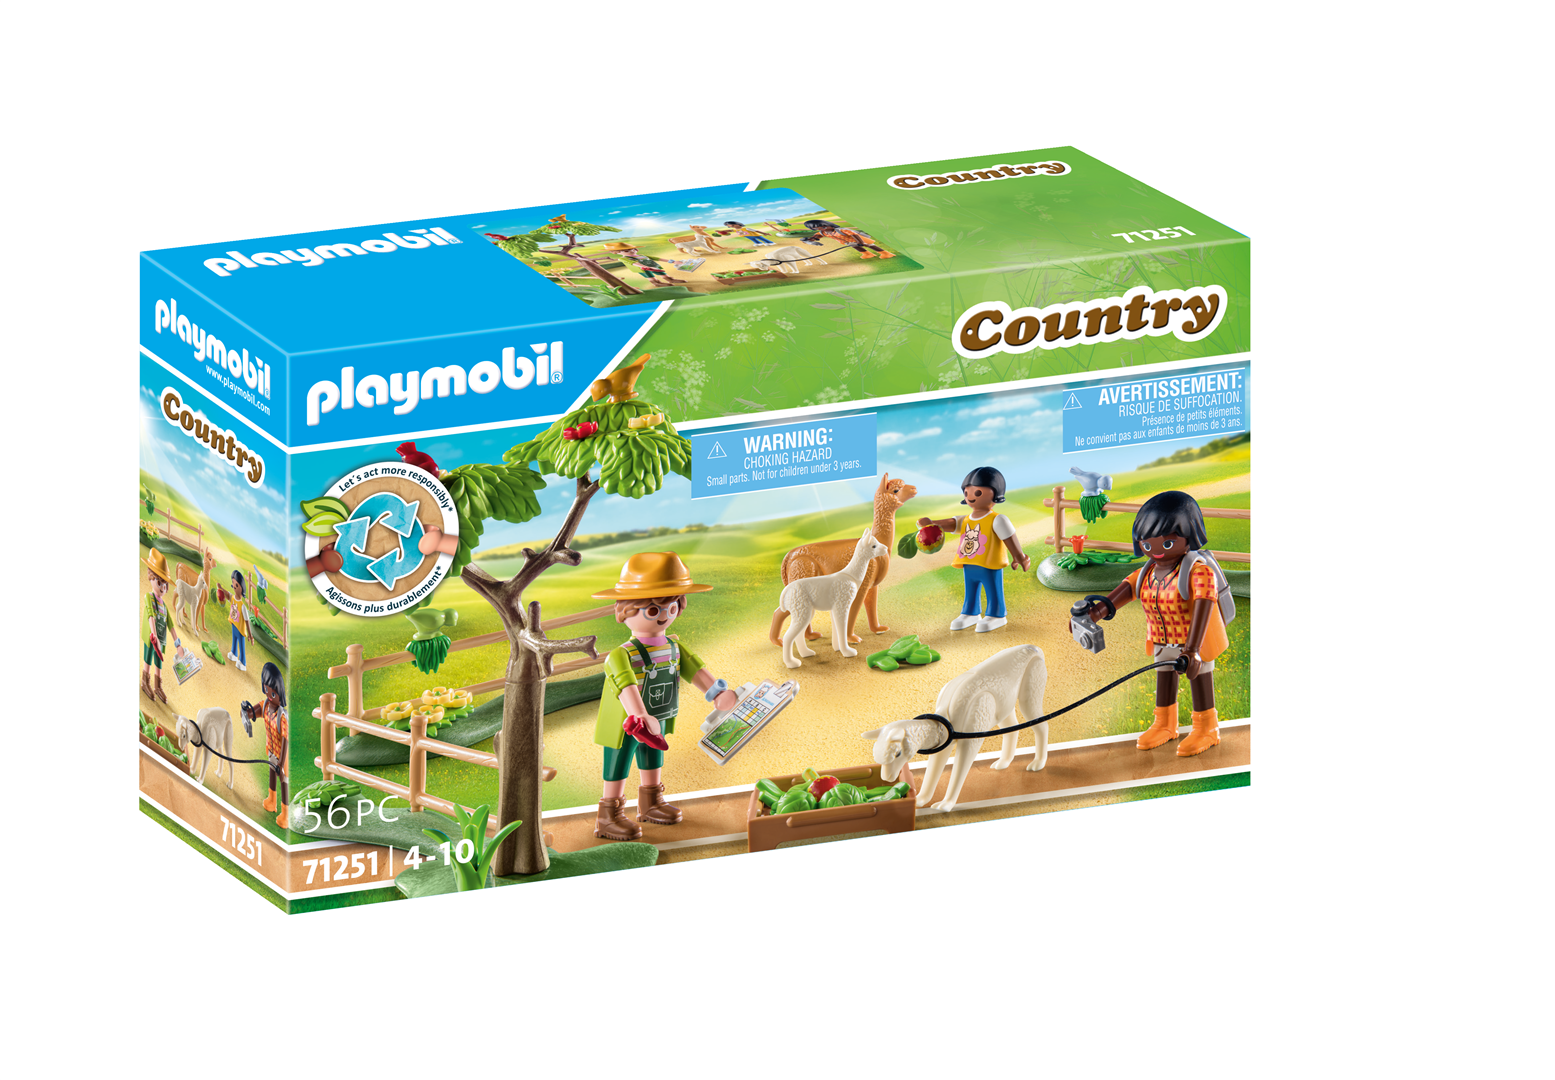 Playmobil country 71251 passeggiata con gli alpaca per bambini dai 4 anni in su - Playmobil